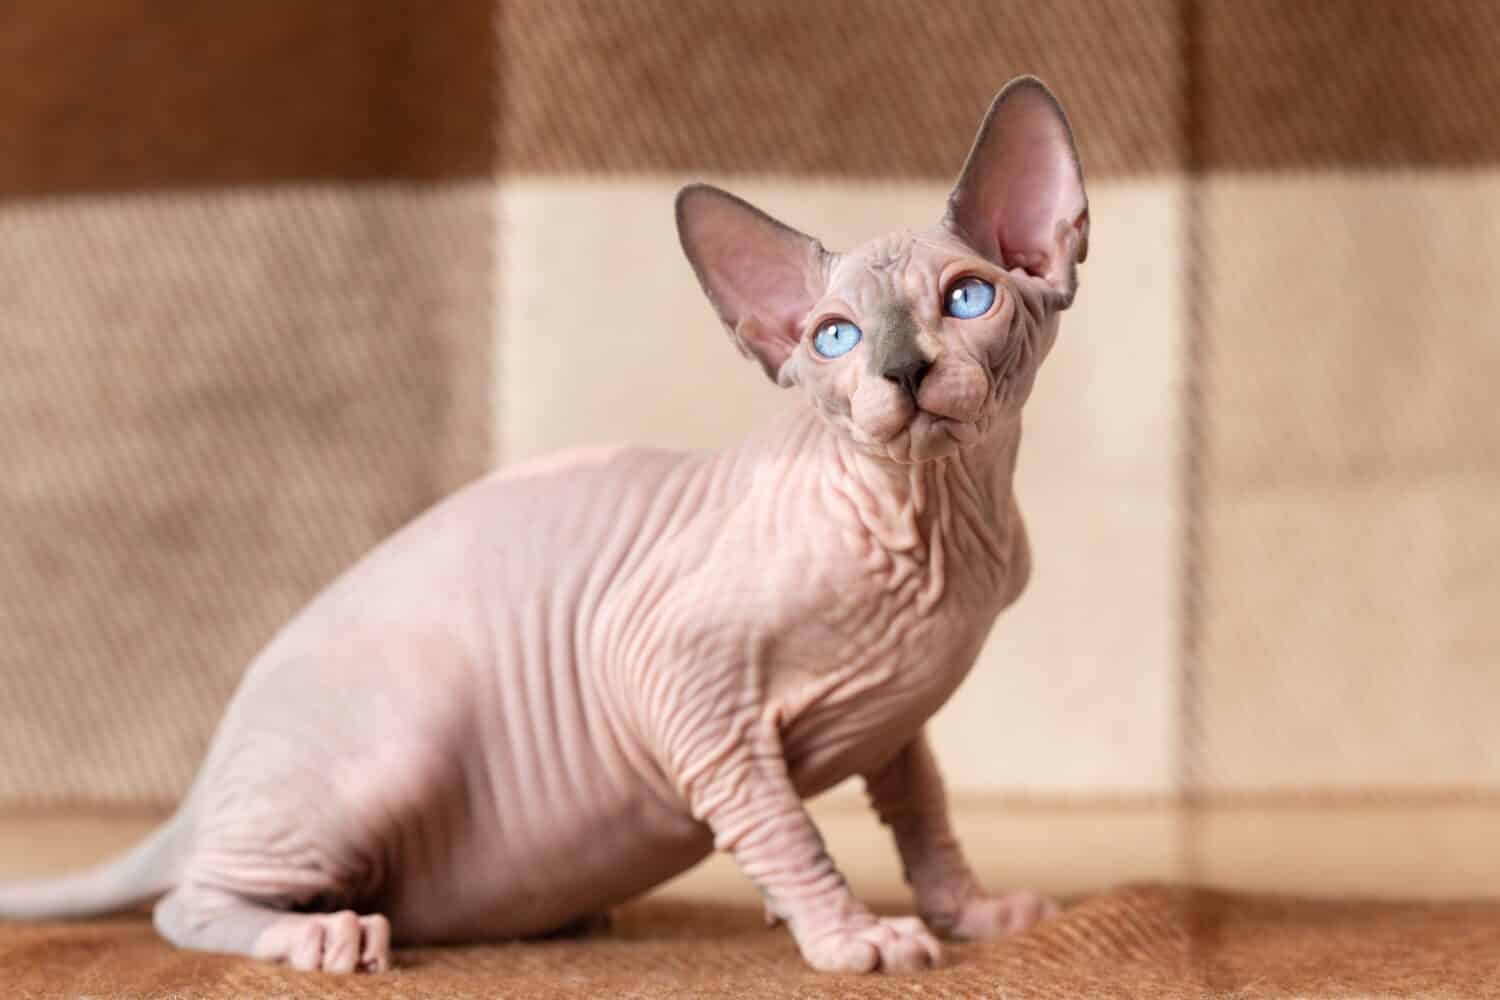 Visone blu e gatto Sphynx di colore bianco di quattro mesi con gli occhi azzurri seduto su una coperta di lana marrone e beige e distogliendo lo sguardo con attenzione.  Il bellissimo gatto maschio senza pelo è un animale domestico di razza rara.  Tiro in casa.